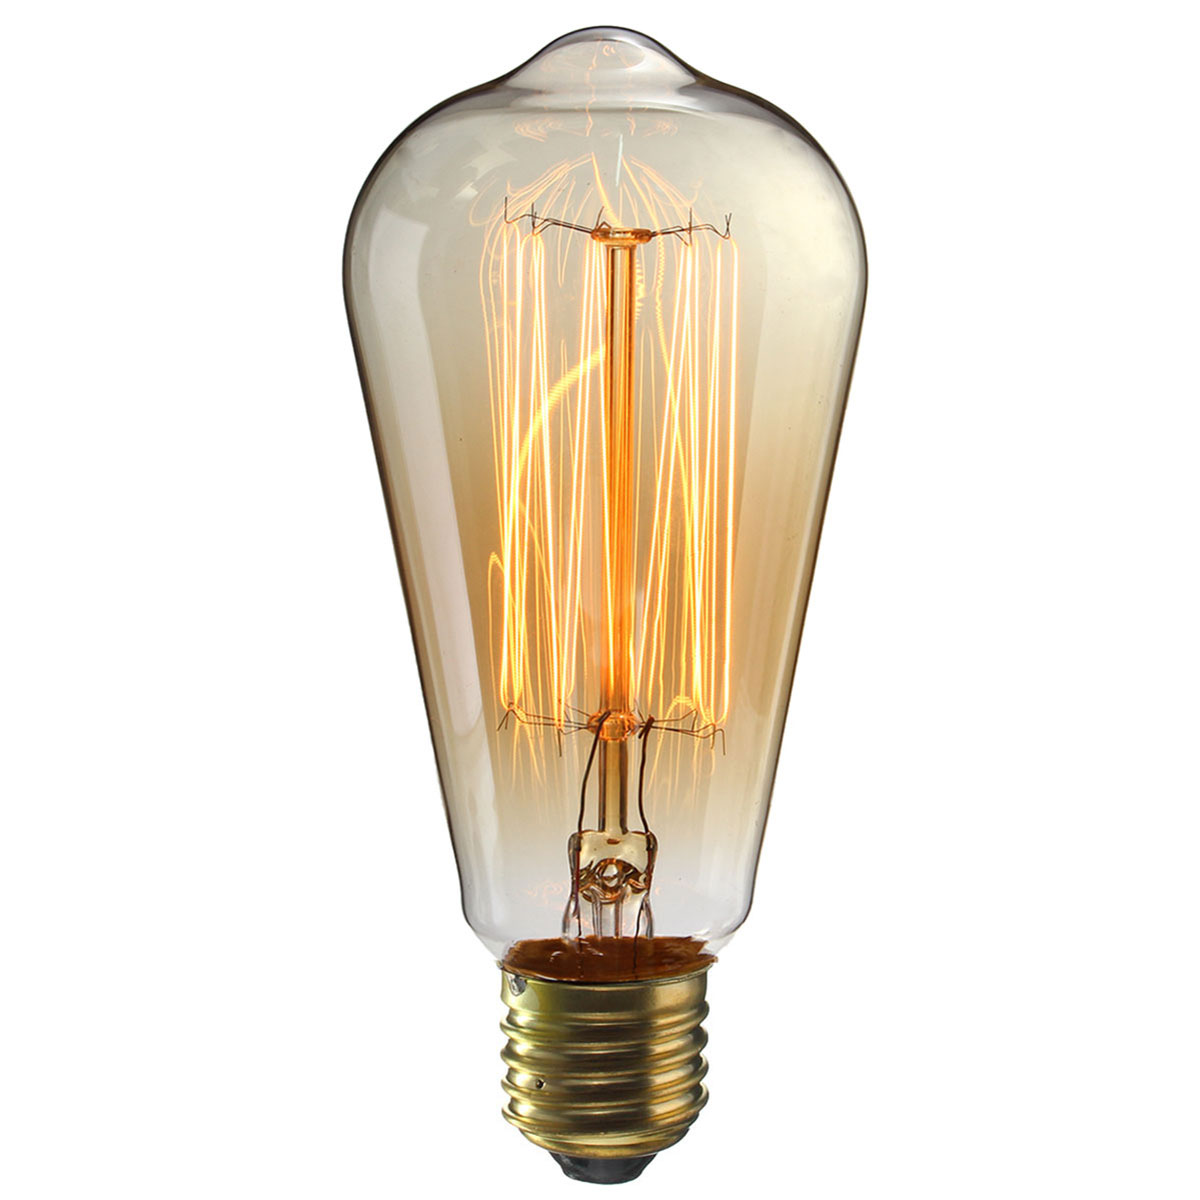 Kingso-2Pcs-110v-60w-Edison-Retro-Series-Tungsten-Lamp-Straight-Wire-1890774-5